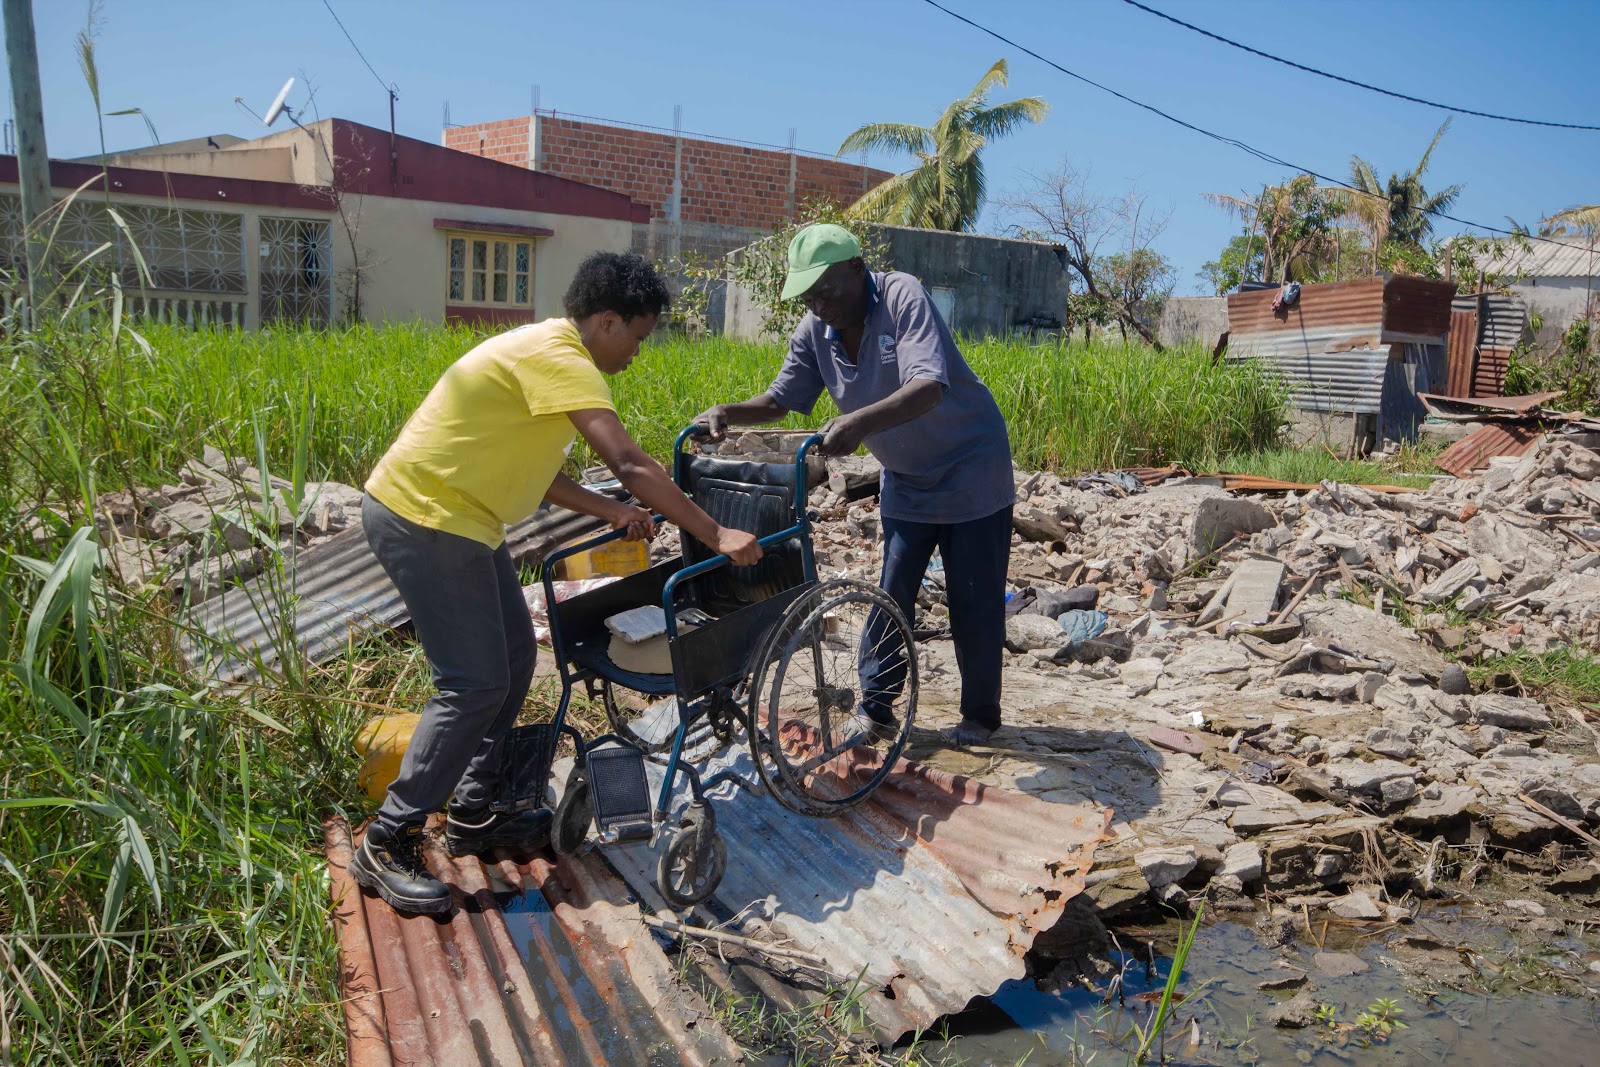 Zwei Menschen räumen nach einer Flutkatastrophe auf. Sie tragen einen Rollstuhl - ein Zeichen darauf, dass Menschen mit Behinderungen stärker von der Erderhitzung betroffen sind.